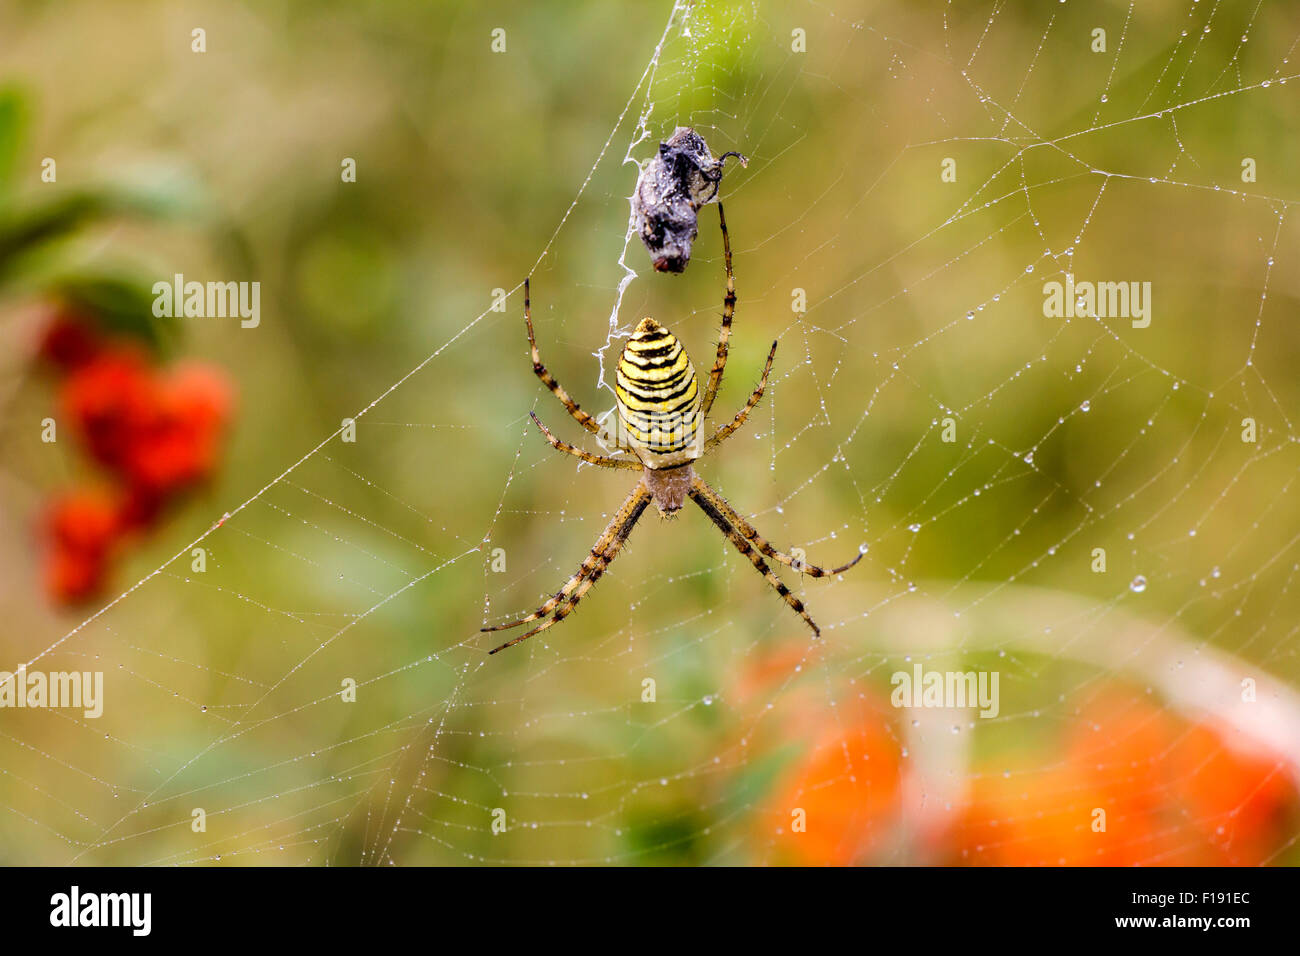 Garden spider (Argiope aurantia) in its net with prey Stock Photo